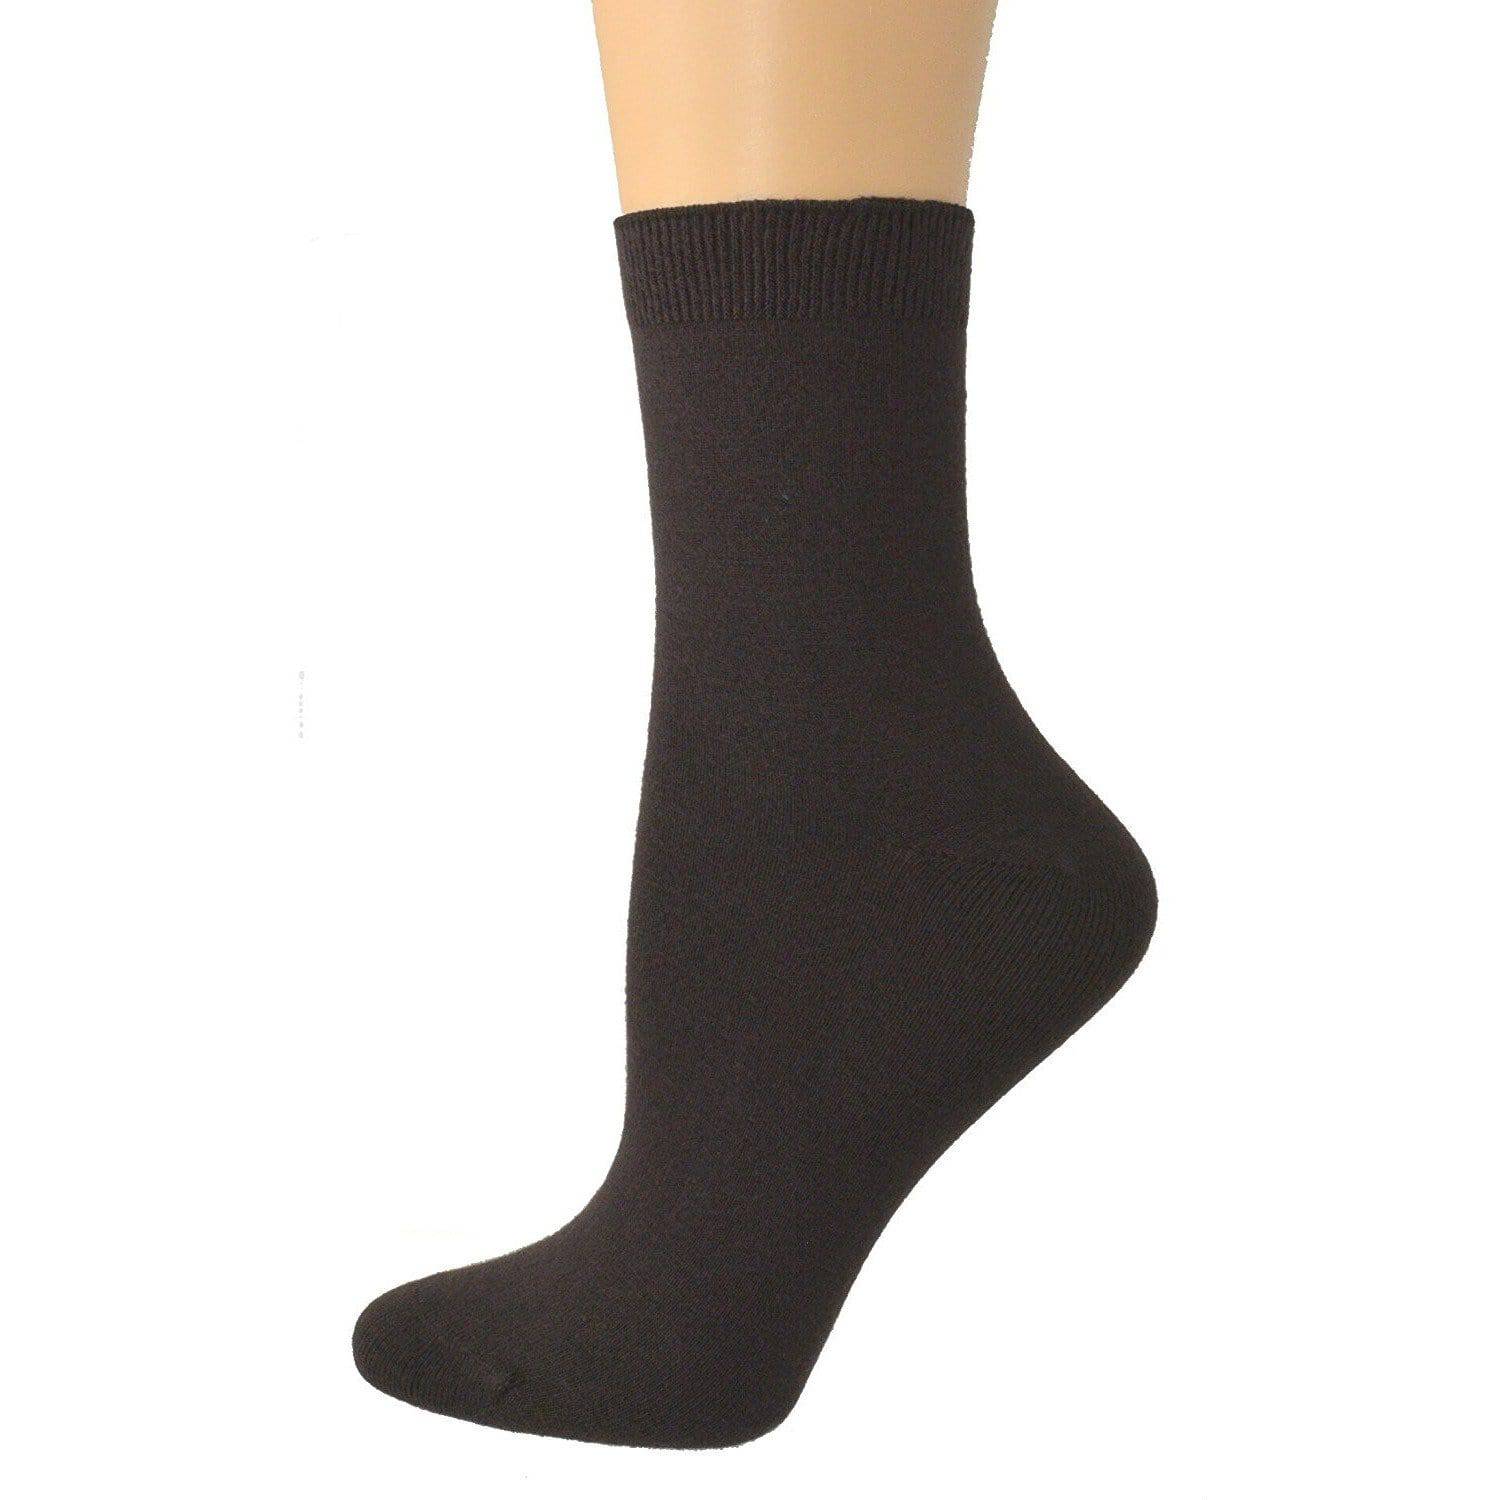 Sierra Socks Women's Bamboo Low Cut Shortie 1-Pair or 3-Pair Pack Socks